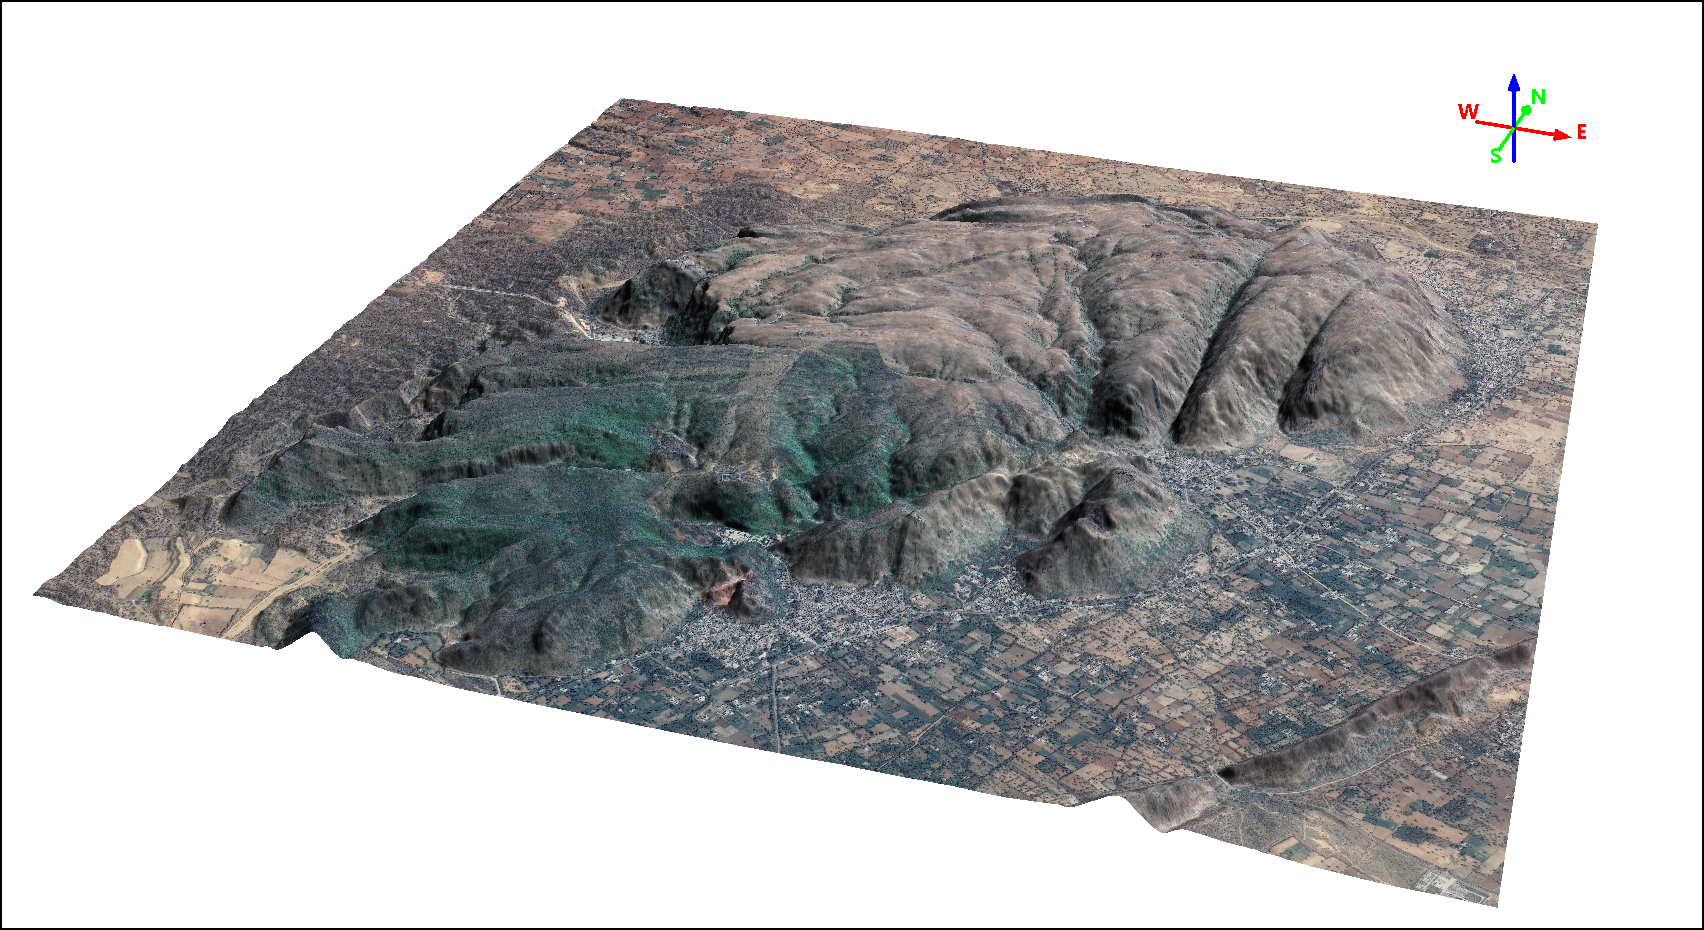 Imagem SuperView-1 Cor Natural Sobreposta em Modelo Digital de Terreno (MDT)